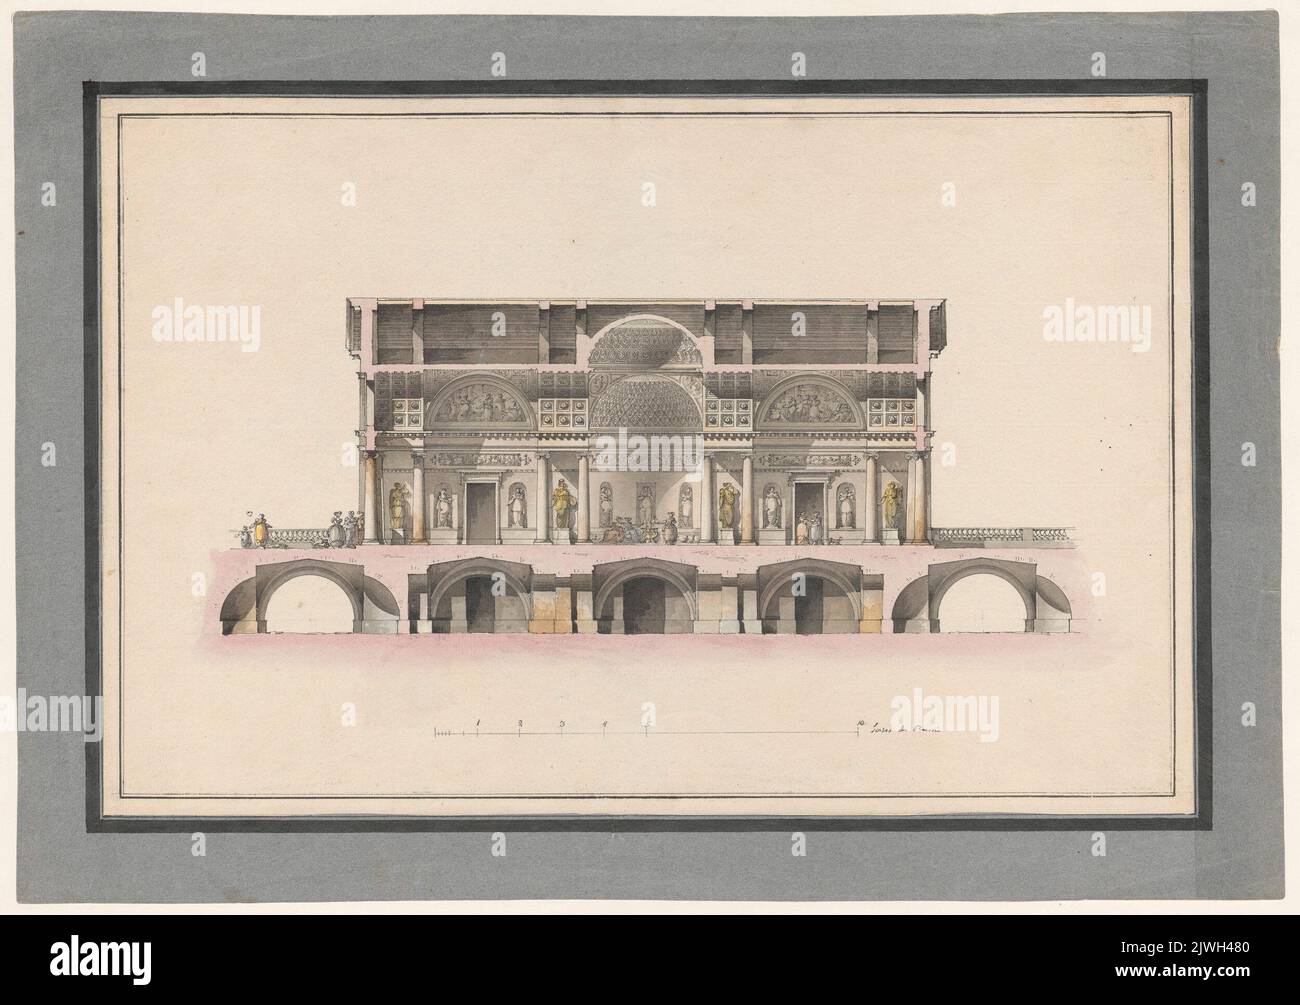 Carskie Sioło. Pawilon koncertowy. Przekrój podłużny. Quarenghi, Giacomo (1744-1817), draughtsman, cartoonist Stock Photo